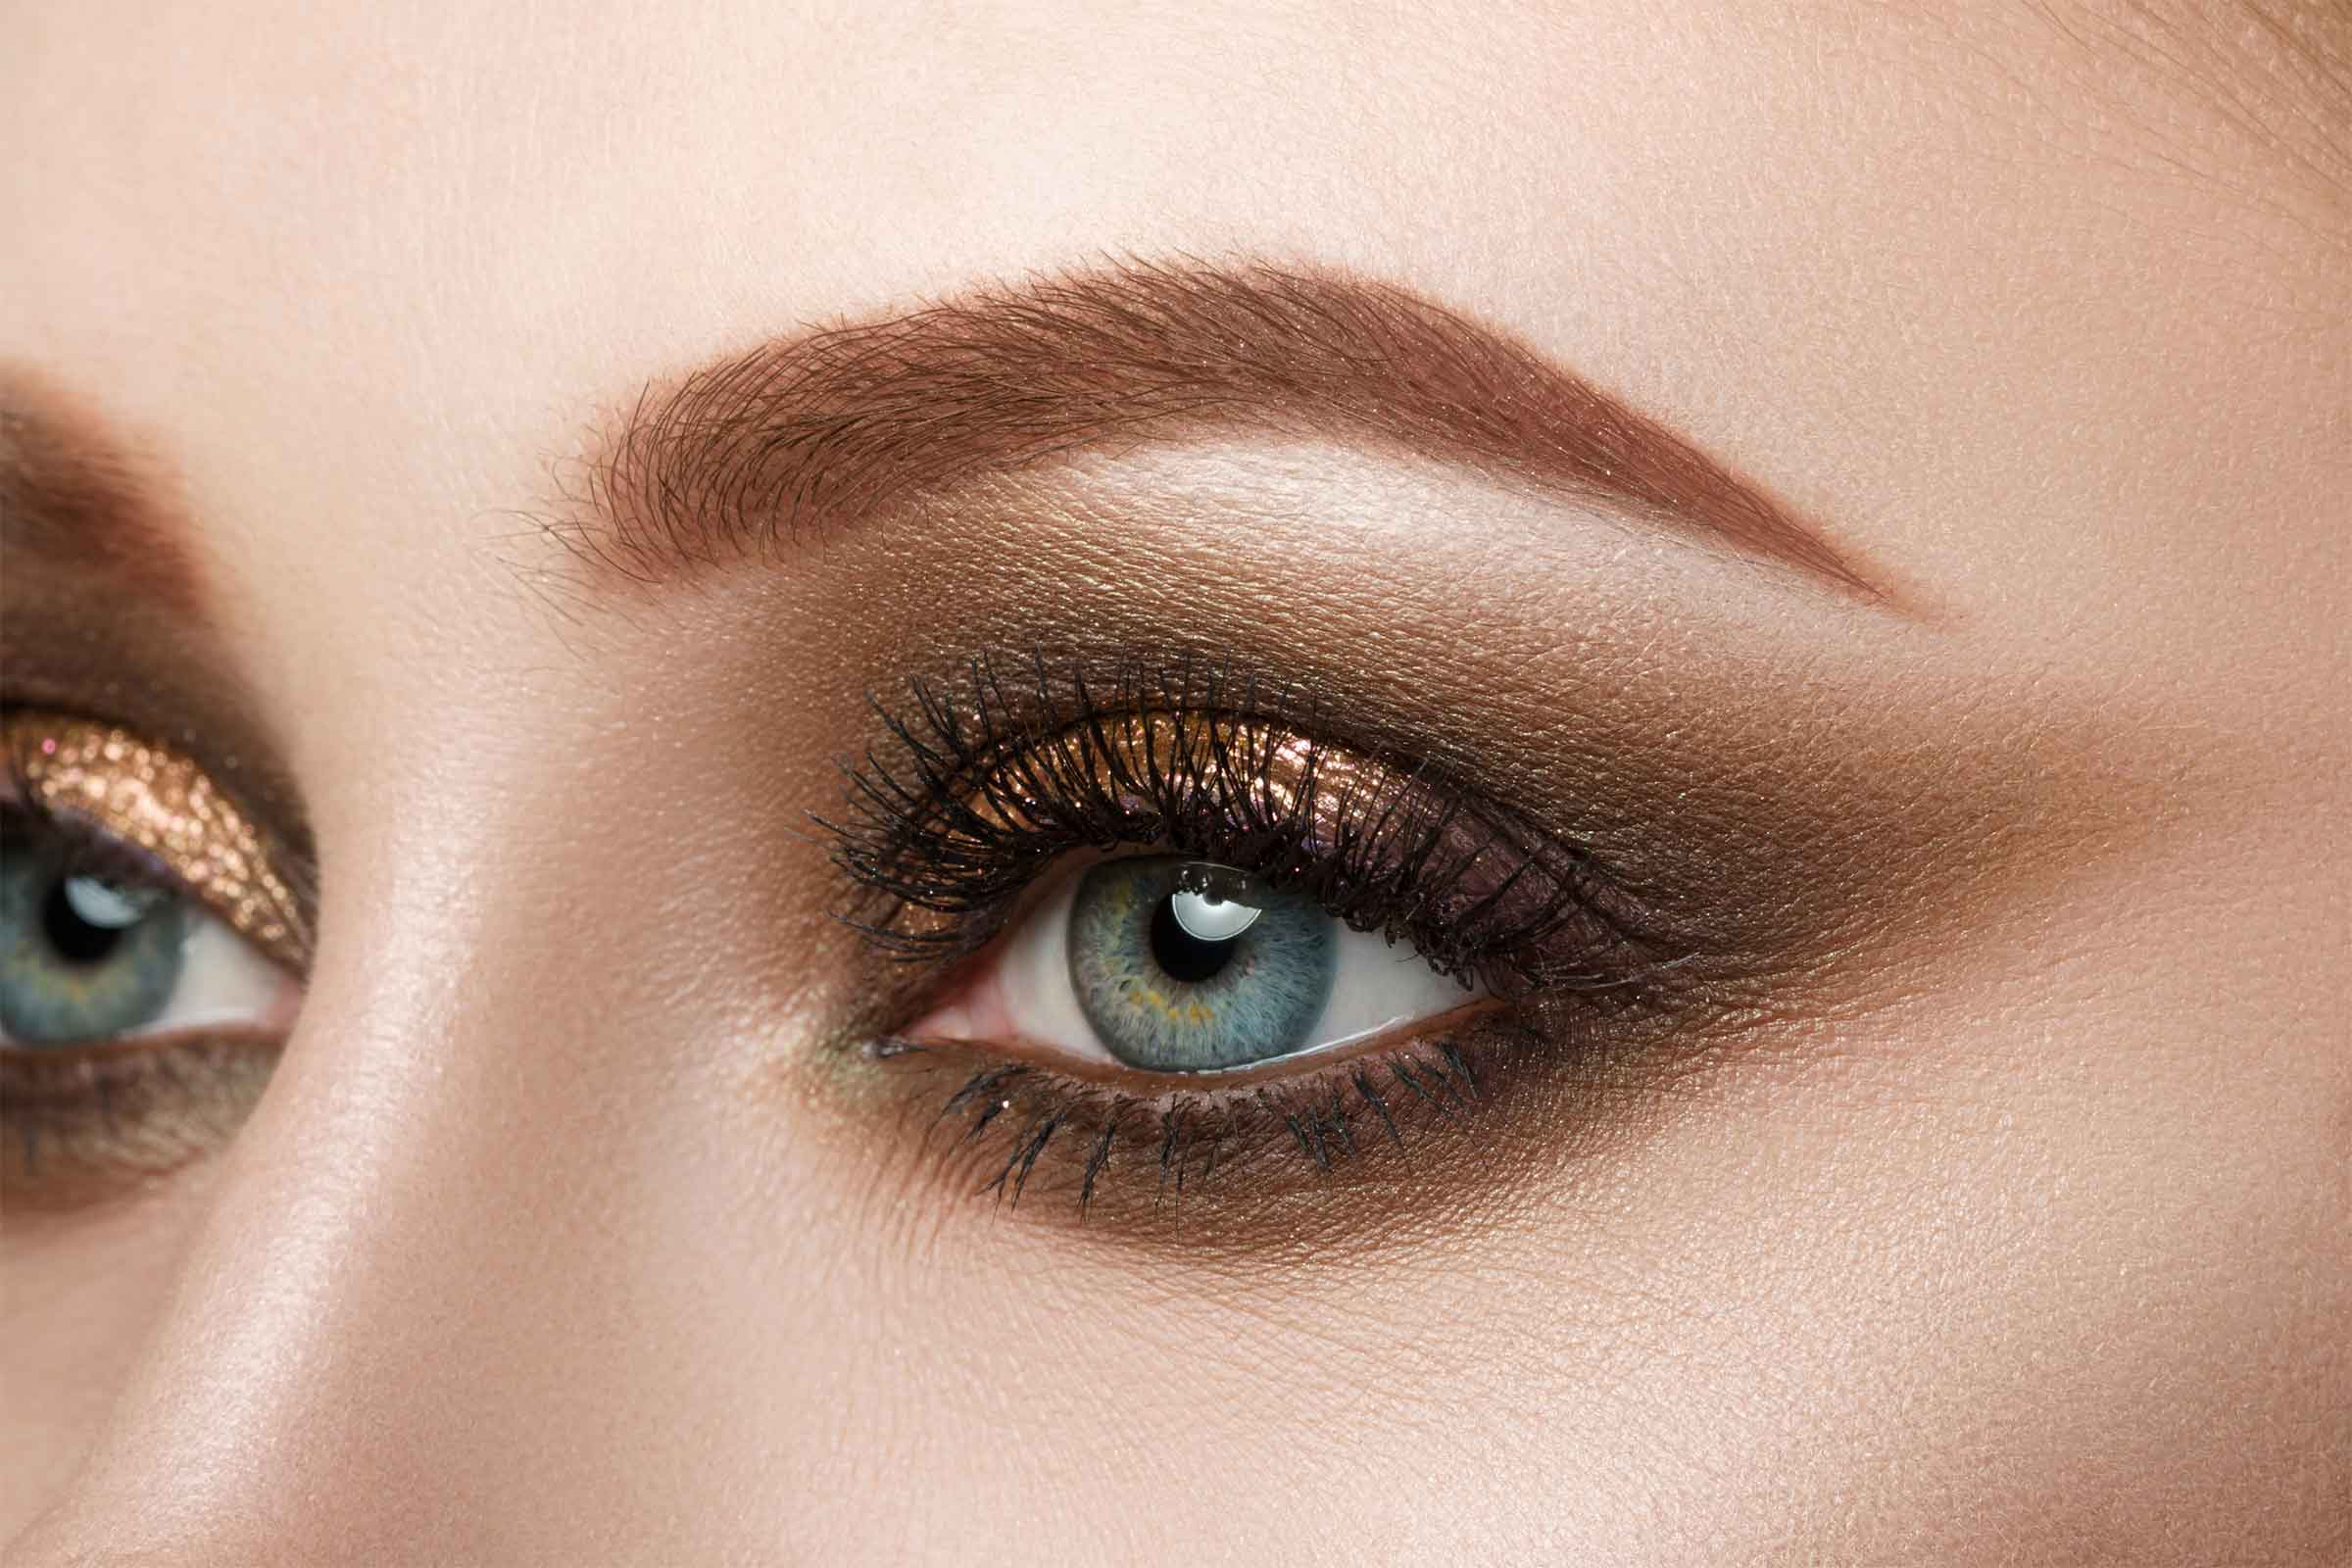 Intense Eye Makeup Eye Makeup Tips 7 Ways To Make Your Eyes Pop Readers Digest